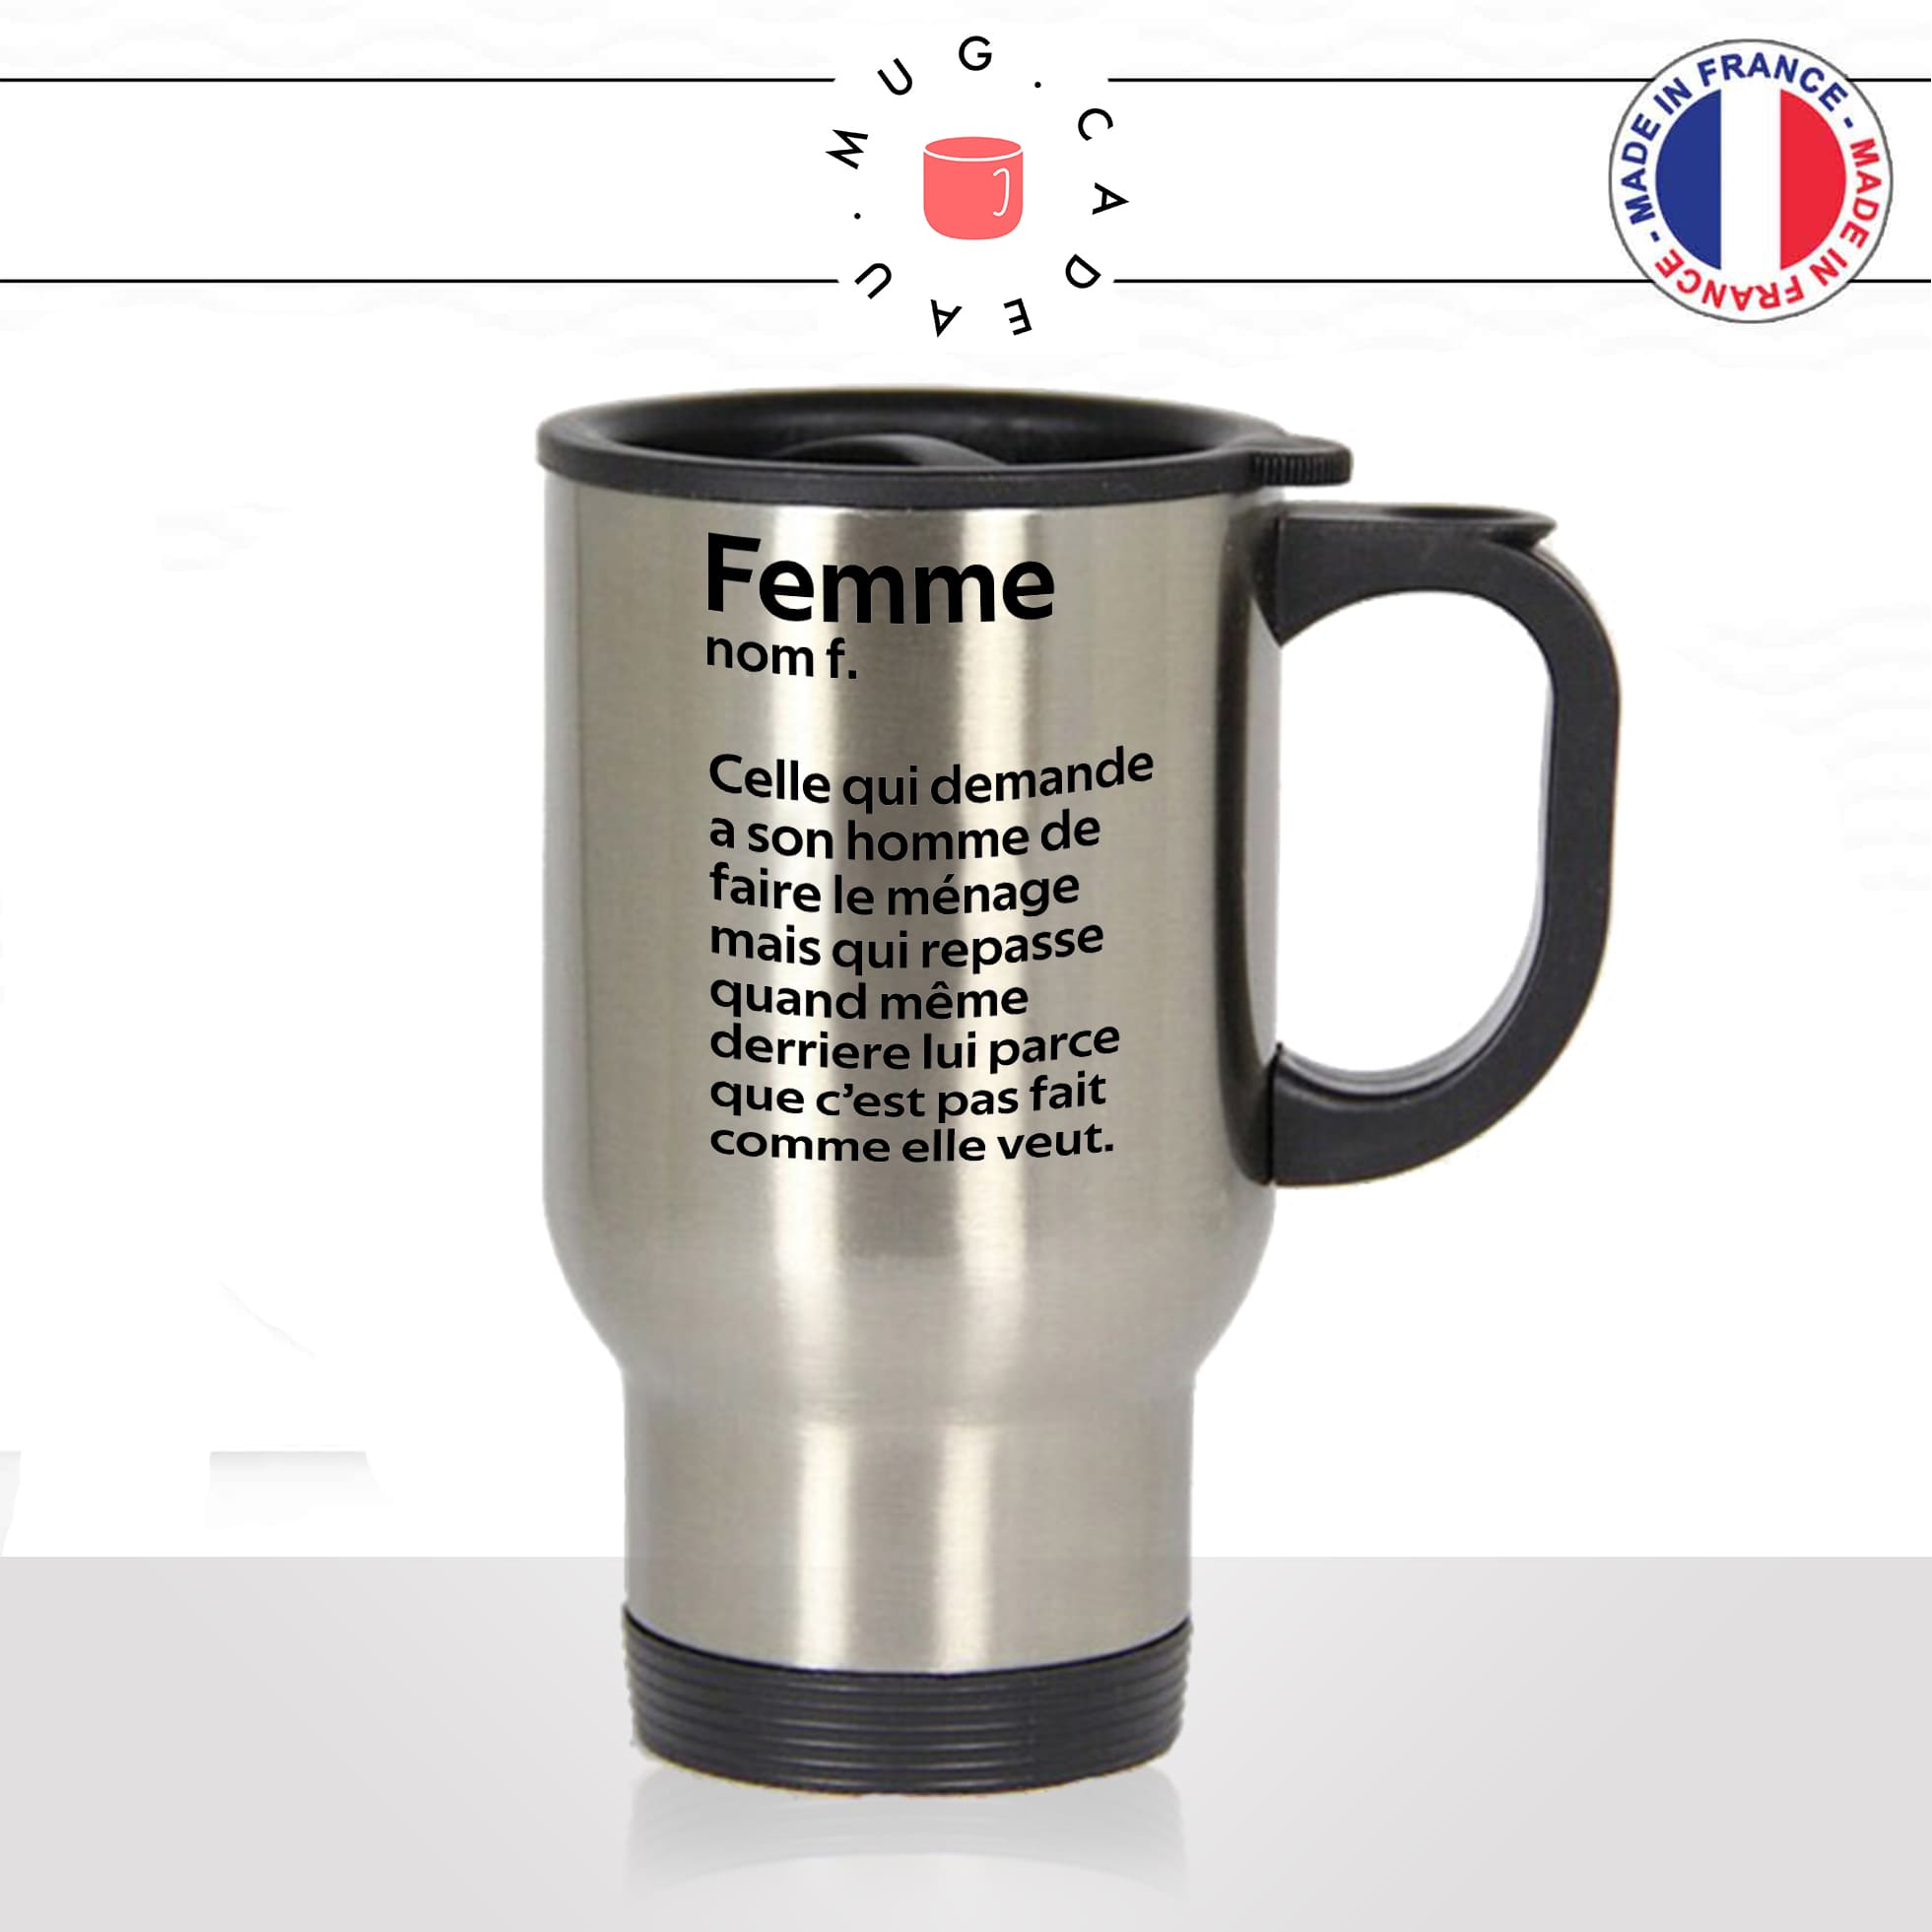 mug-tasse-thermos-isotherme-voyage-femme-définition-ménage-maniaque-maniac-homme-couple-maman-humour-fun-idée-cadeau-originale2